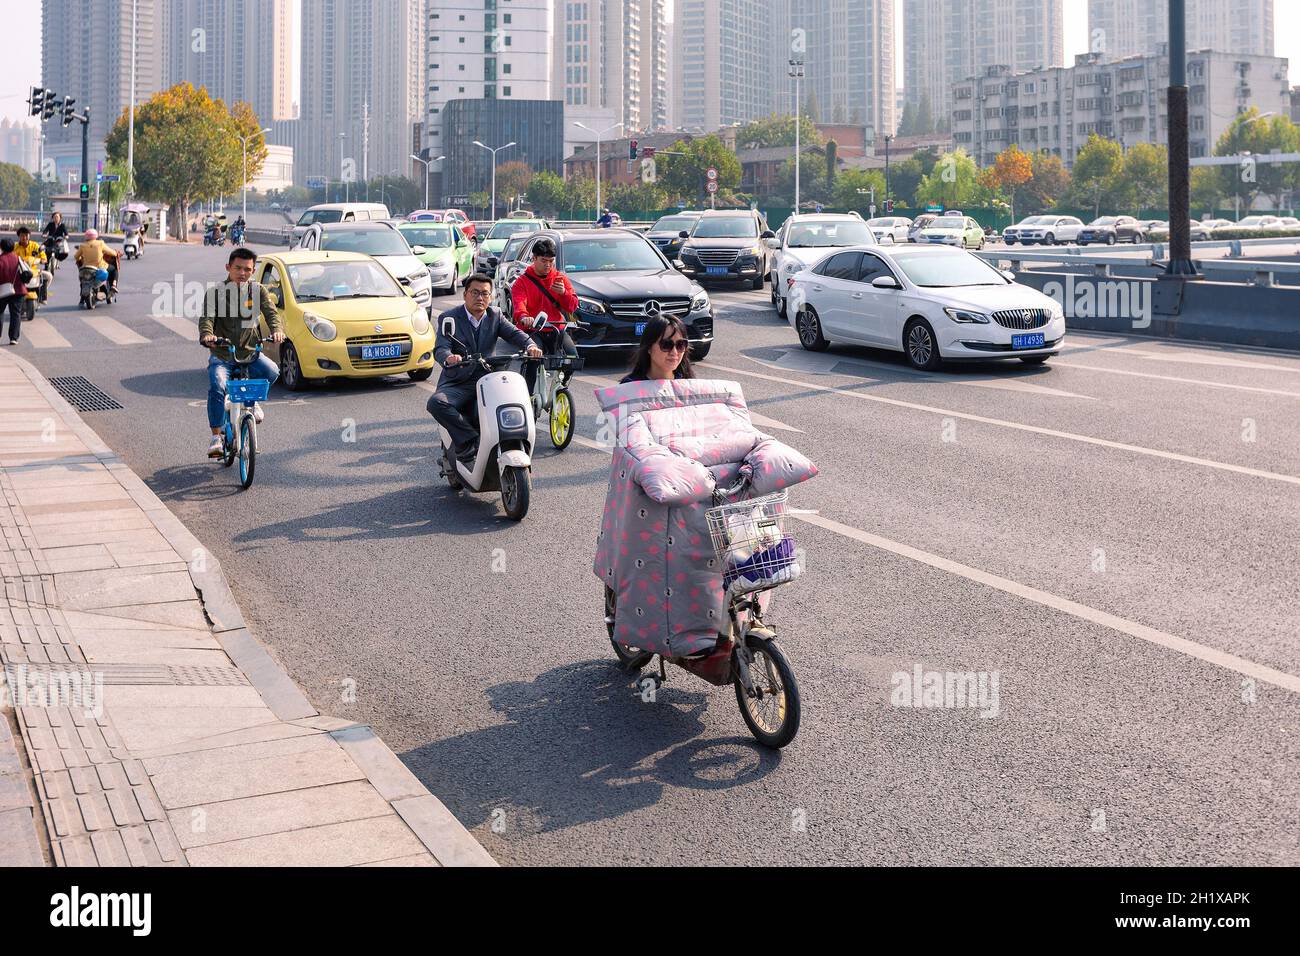 Hefei, Cina - 5 novembre 2019: Persone in bicicletta elettrica sul bivio. Il tempo divenne freddo e ogni bicicletta elettrica era dotata di vento colorato Foto Stock